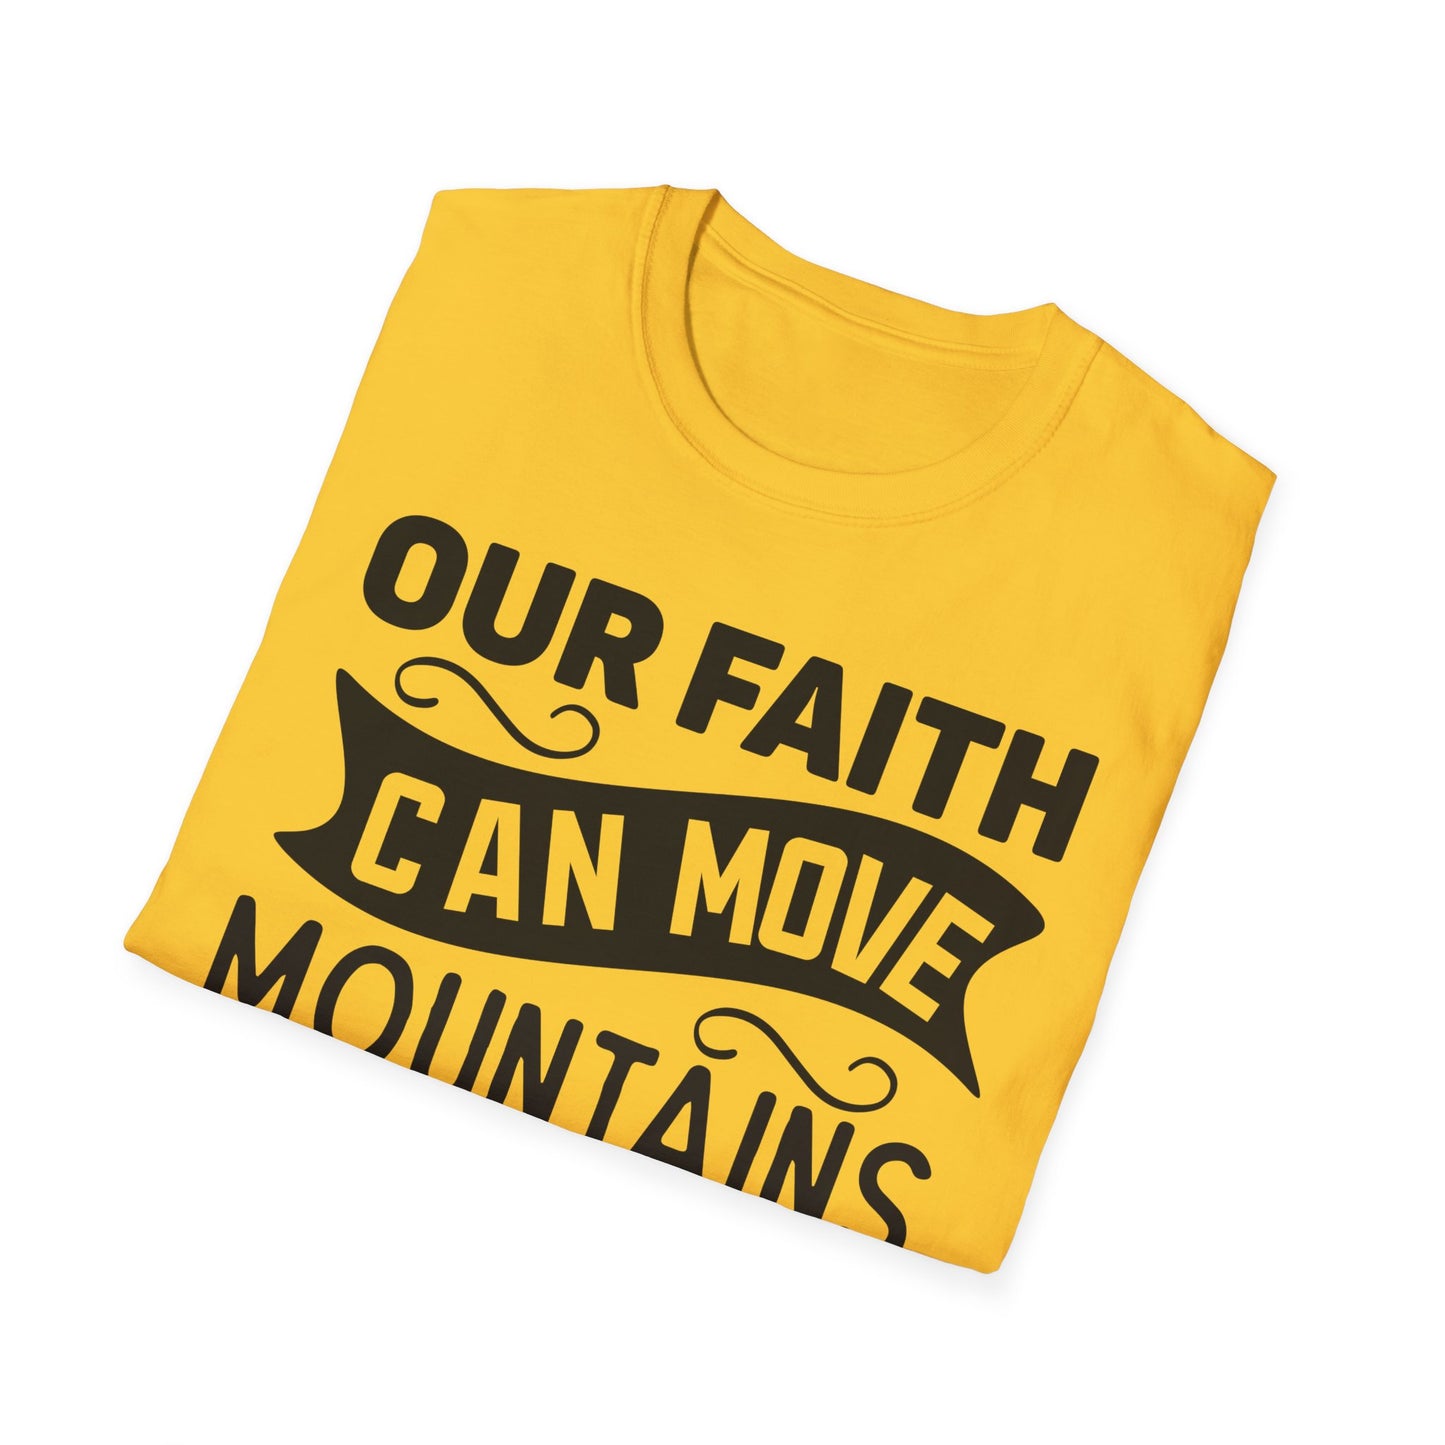 Our Faith Can Move Mountains Matthew 17:20 Triple Viking T-Shirt